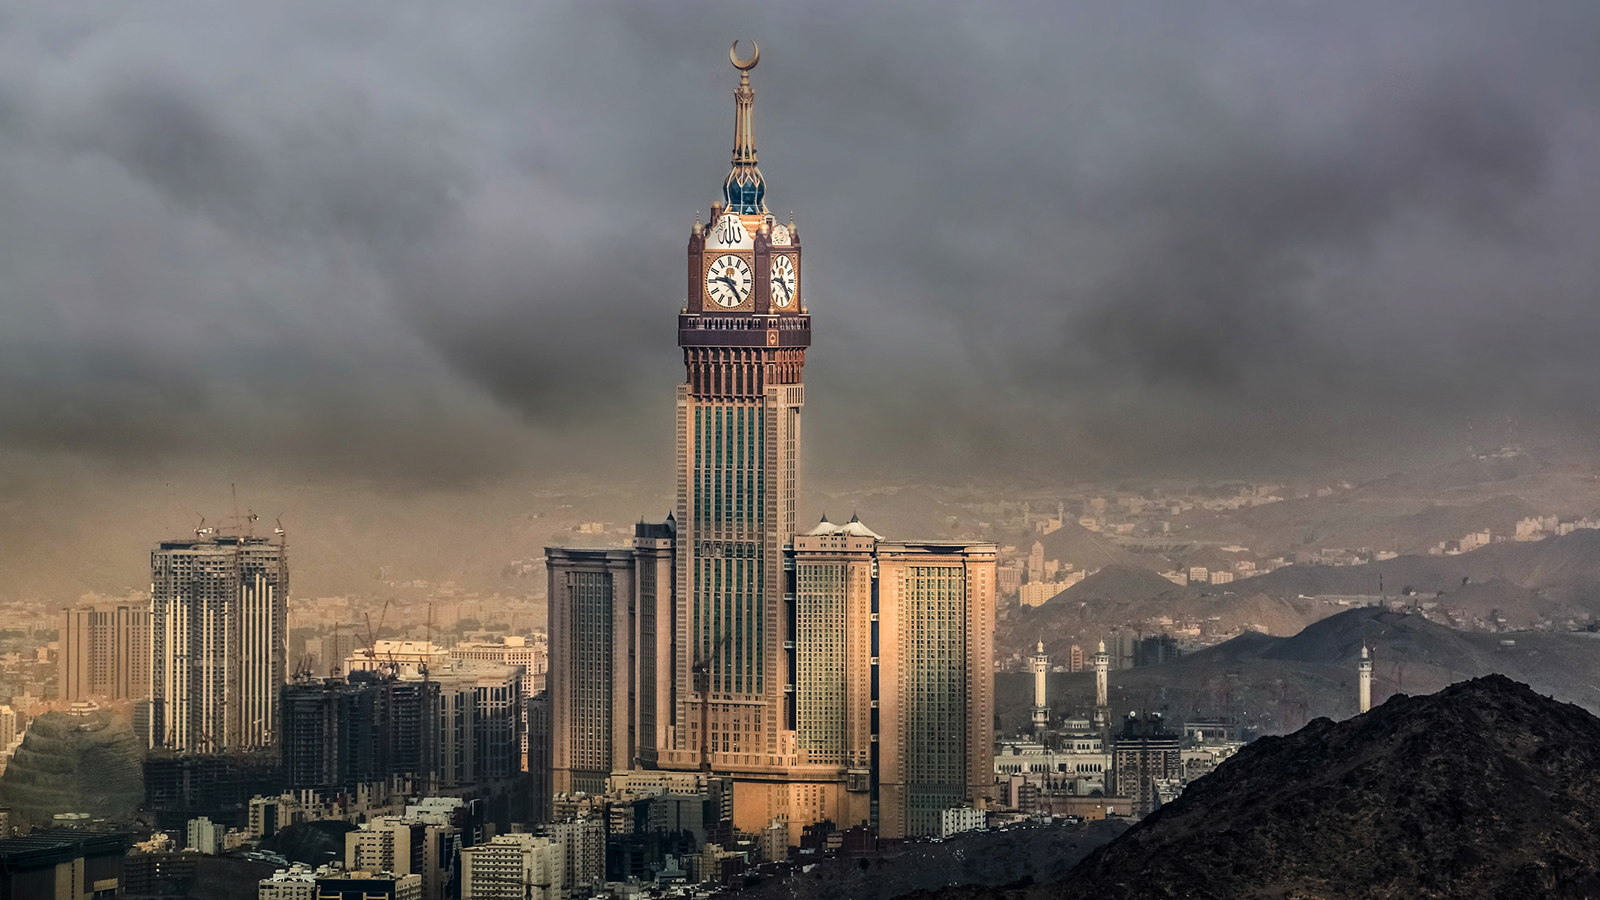 Royal Clock Tower Makkah